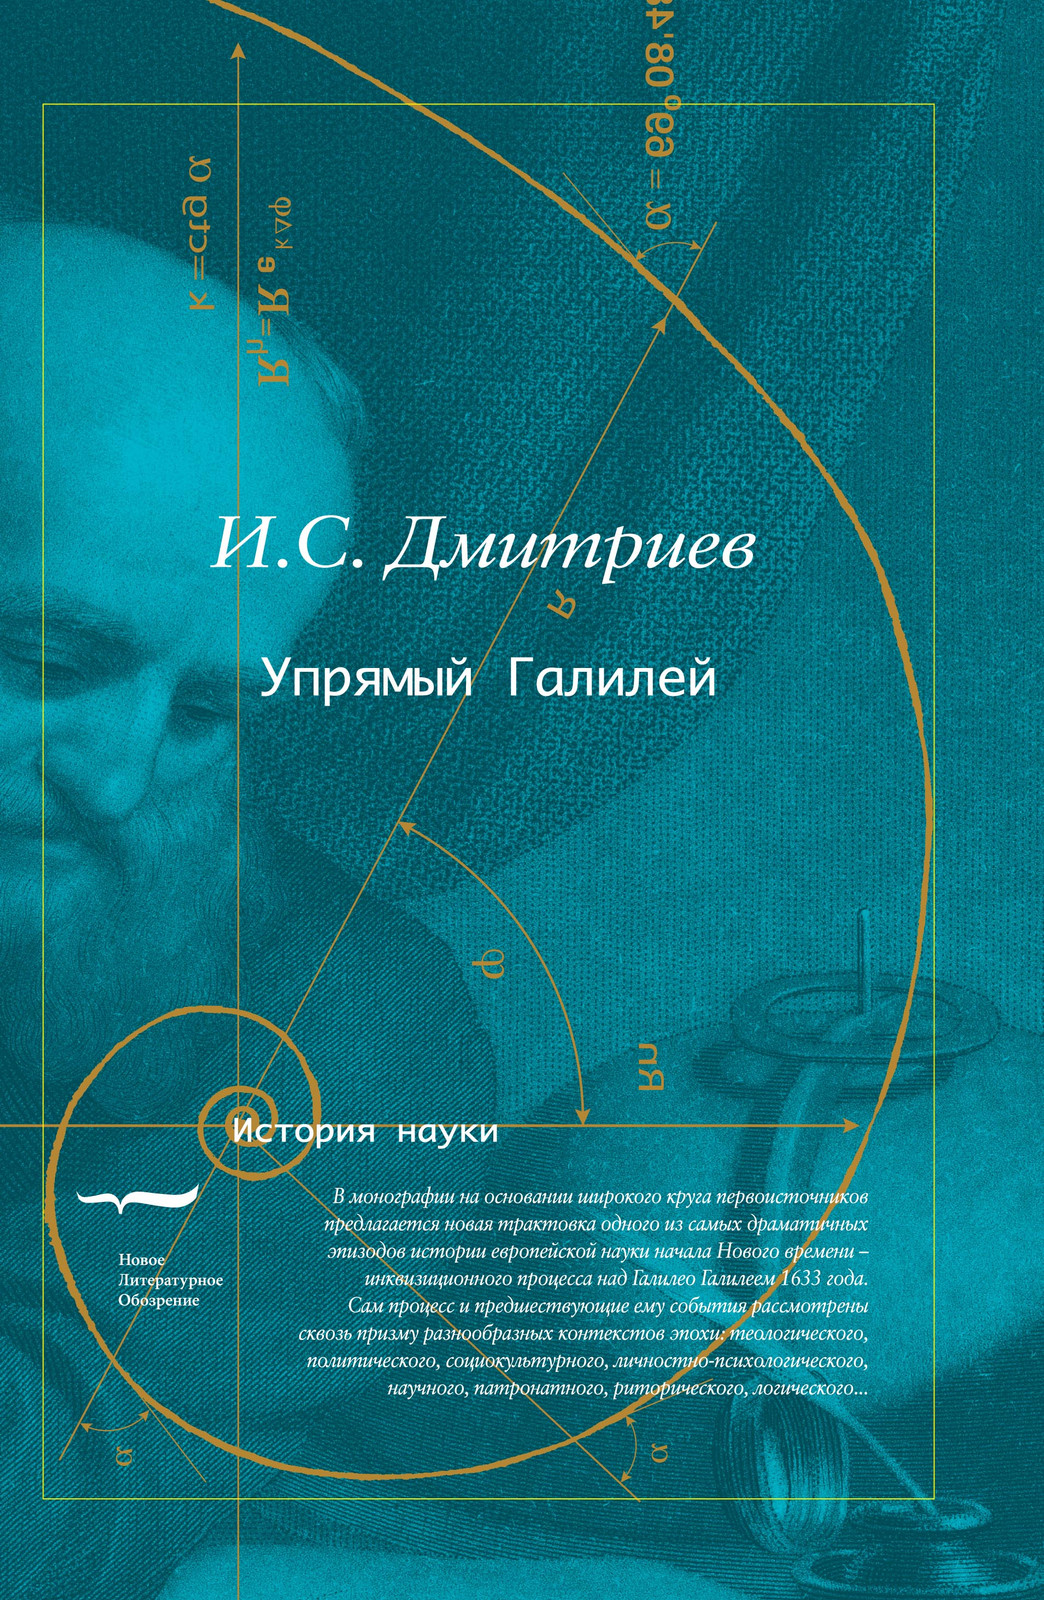 Игорь Дмитриев написал книгу о&nbsp;Галилее, в&nbsp;которой предложил новую трактовку инквизиционного процесса над&nbsp;ним.